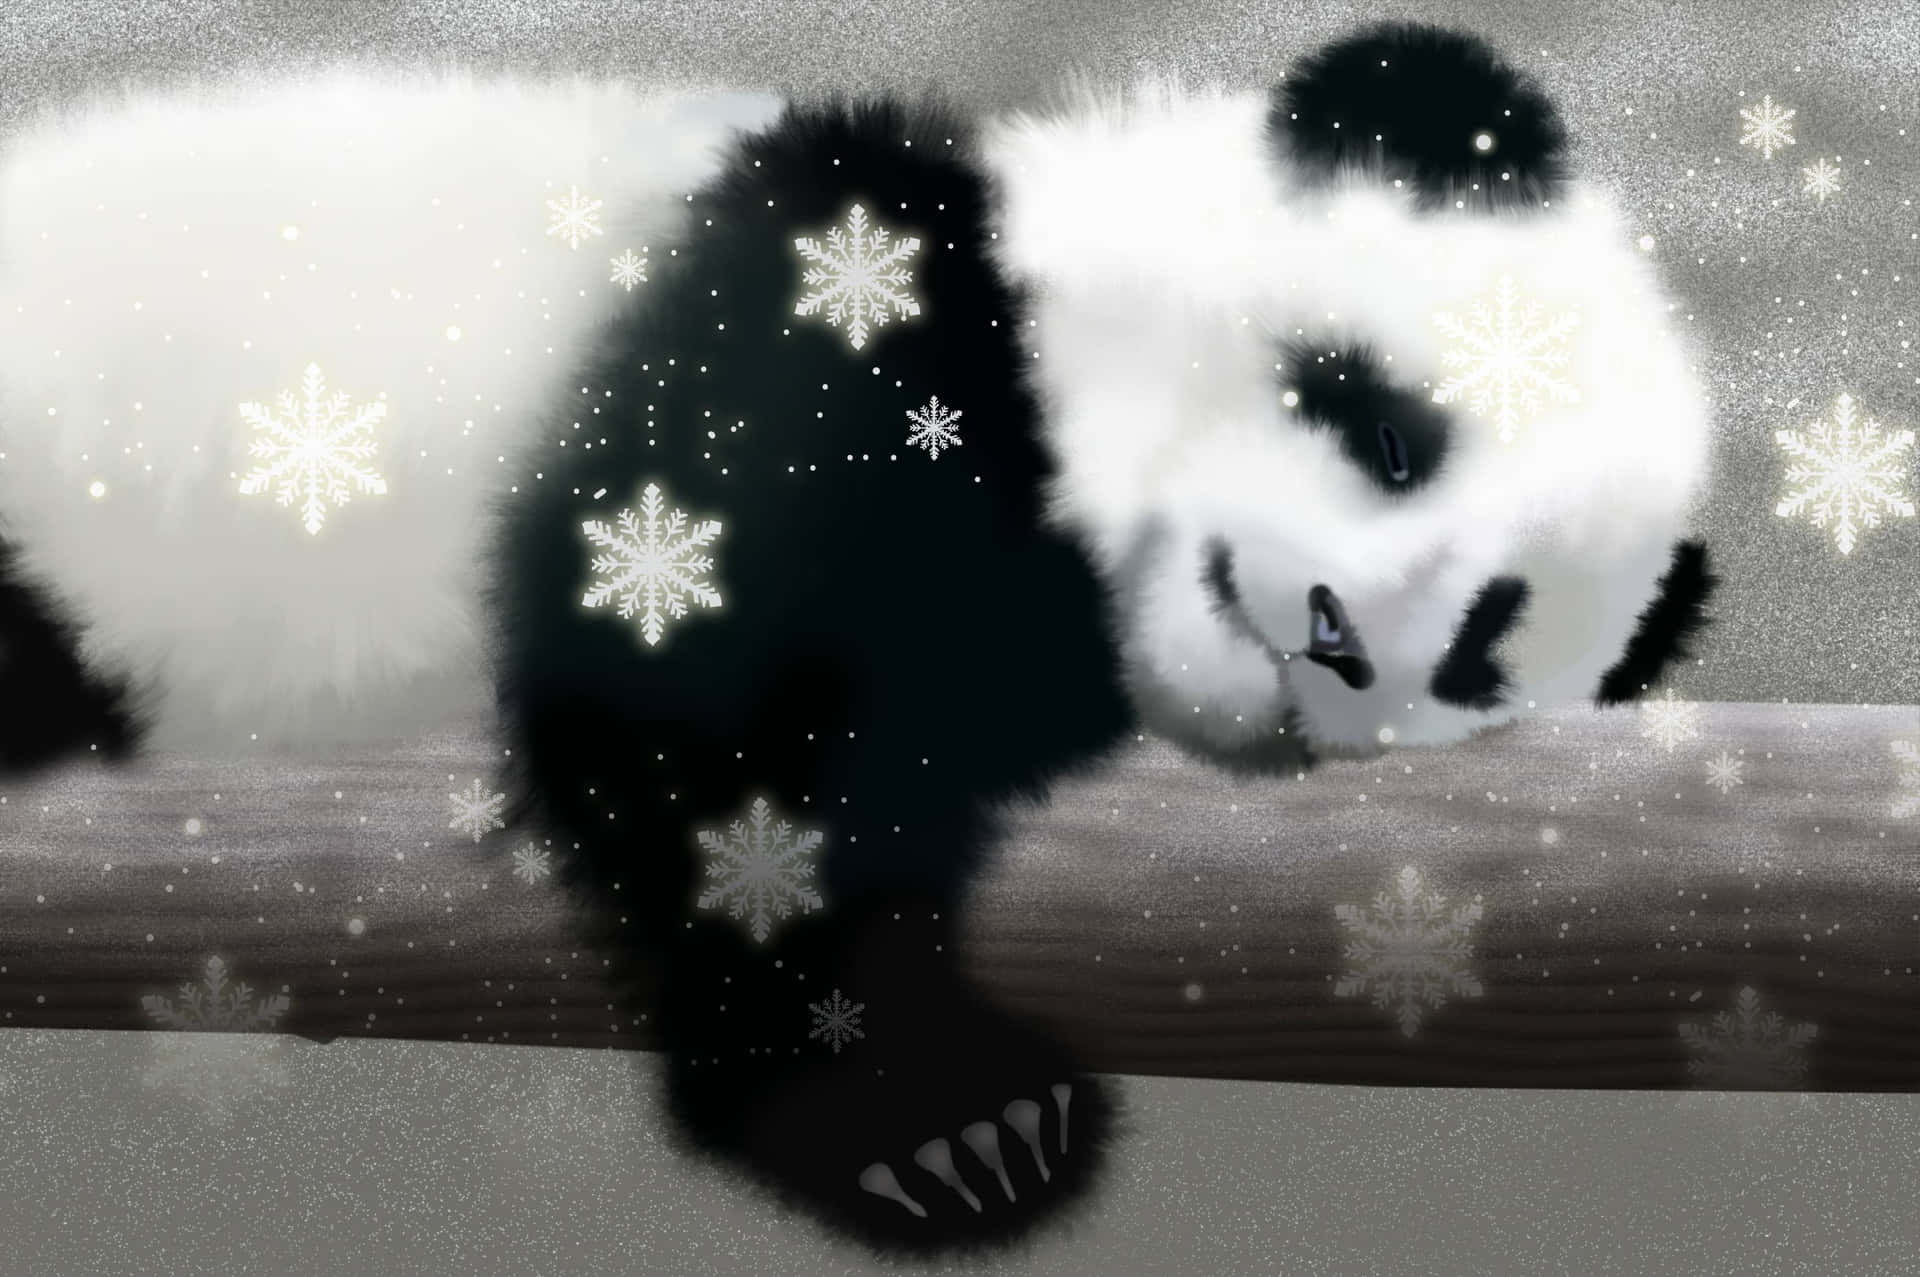 A cute panda curled up in an embrace